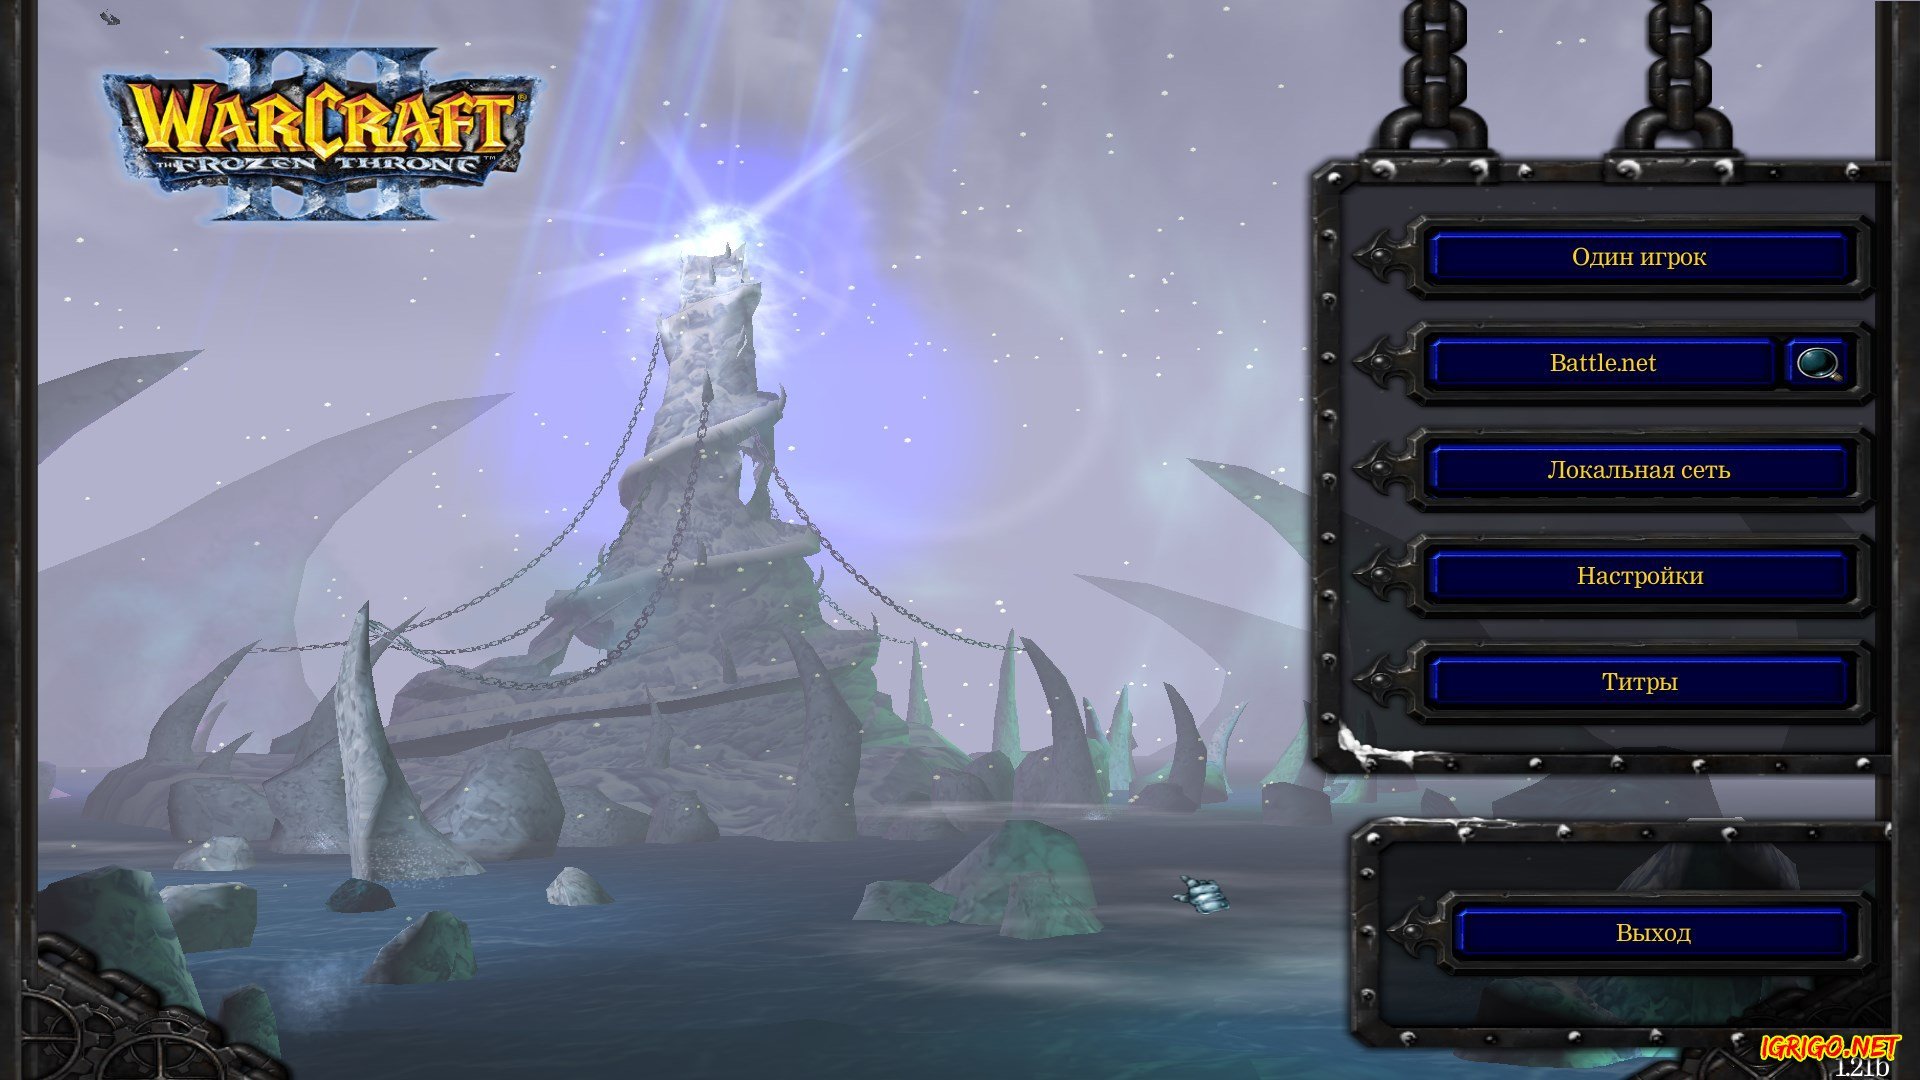 Warcraft 3 frozen throne скачать торрент на русском карты дота фото 25